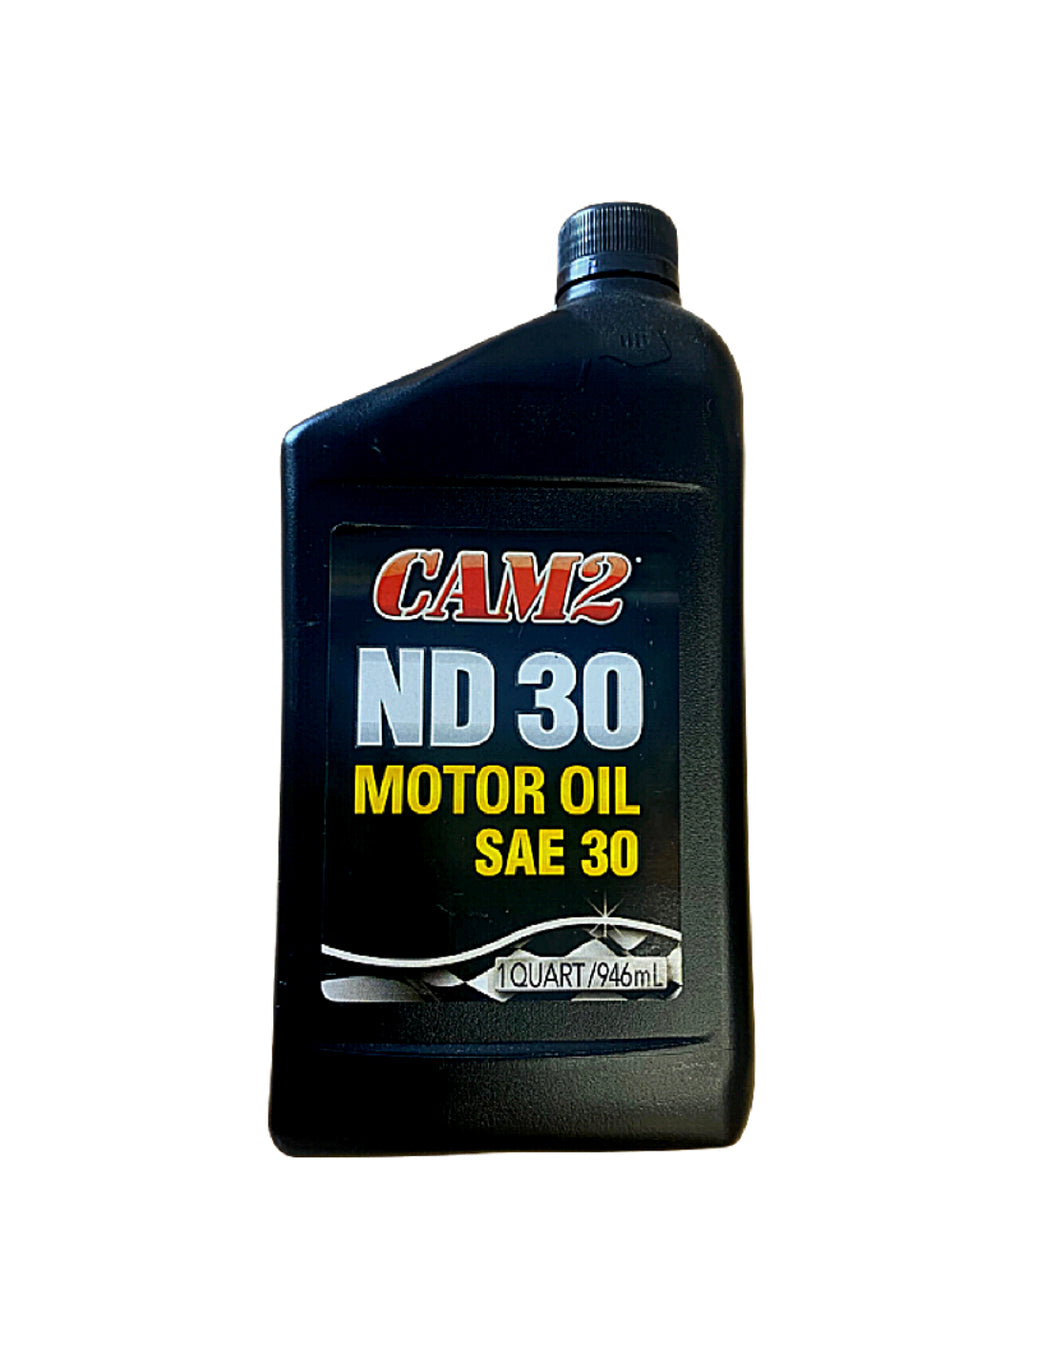 Cam2 Motor Oil